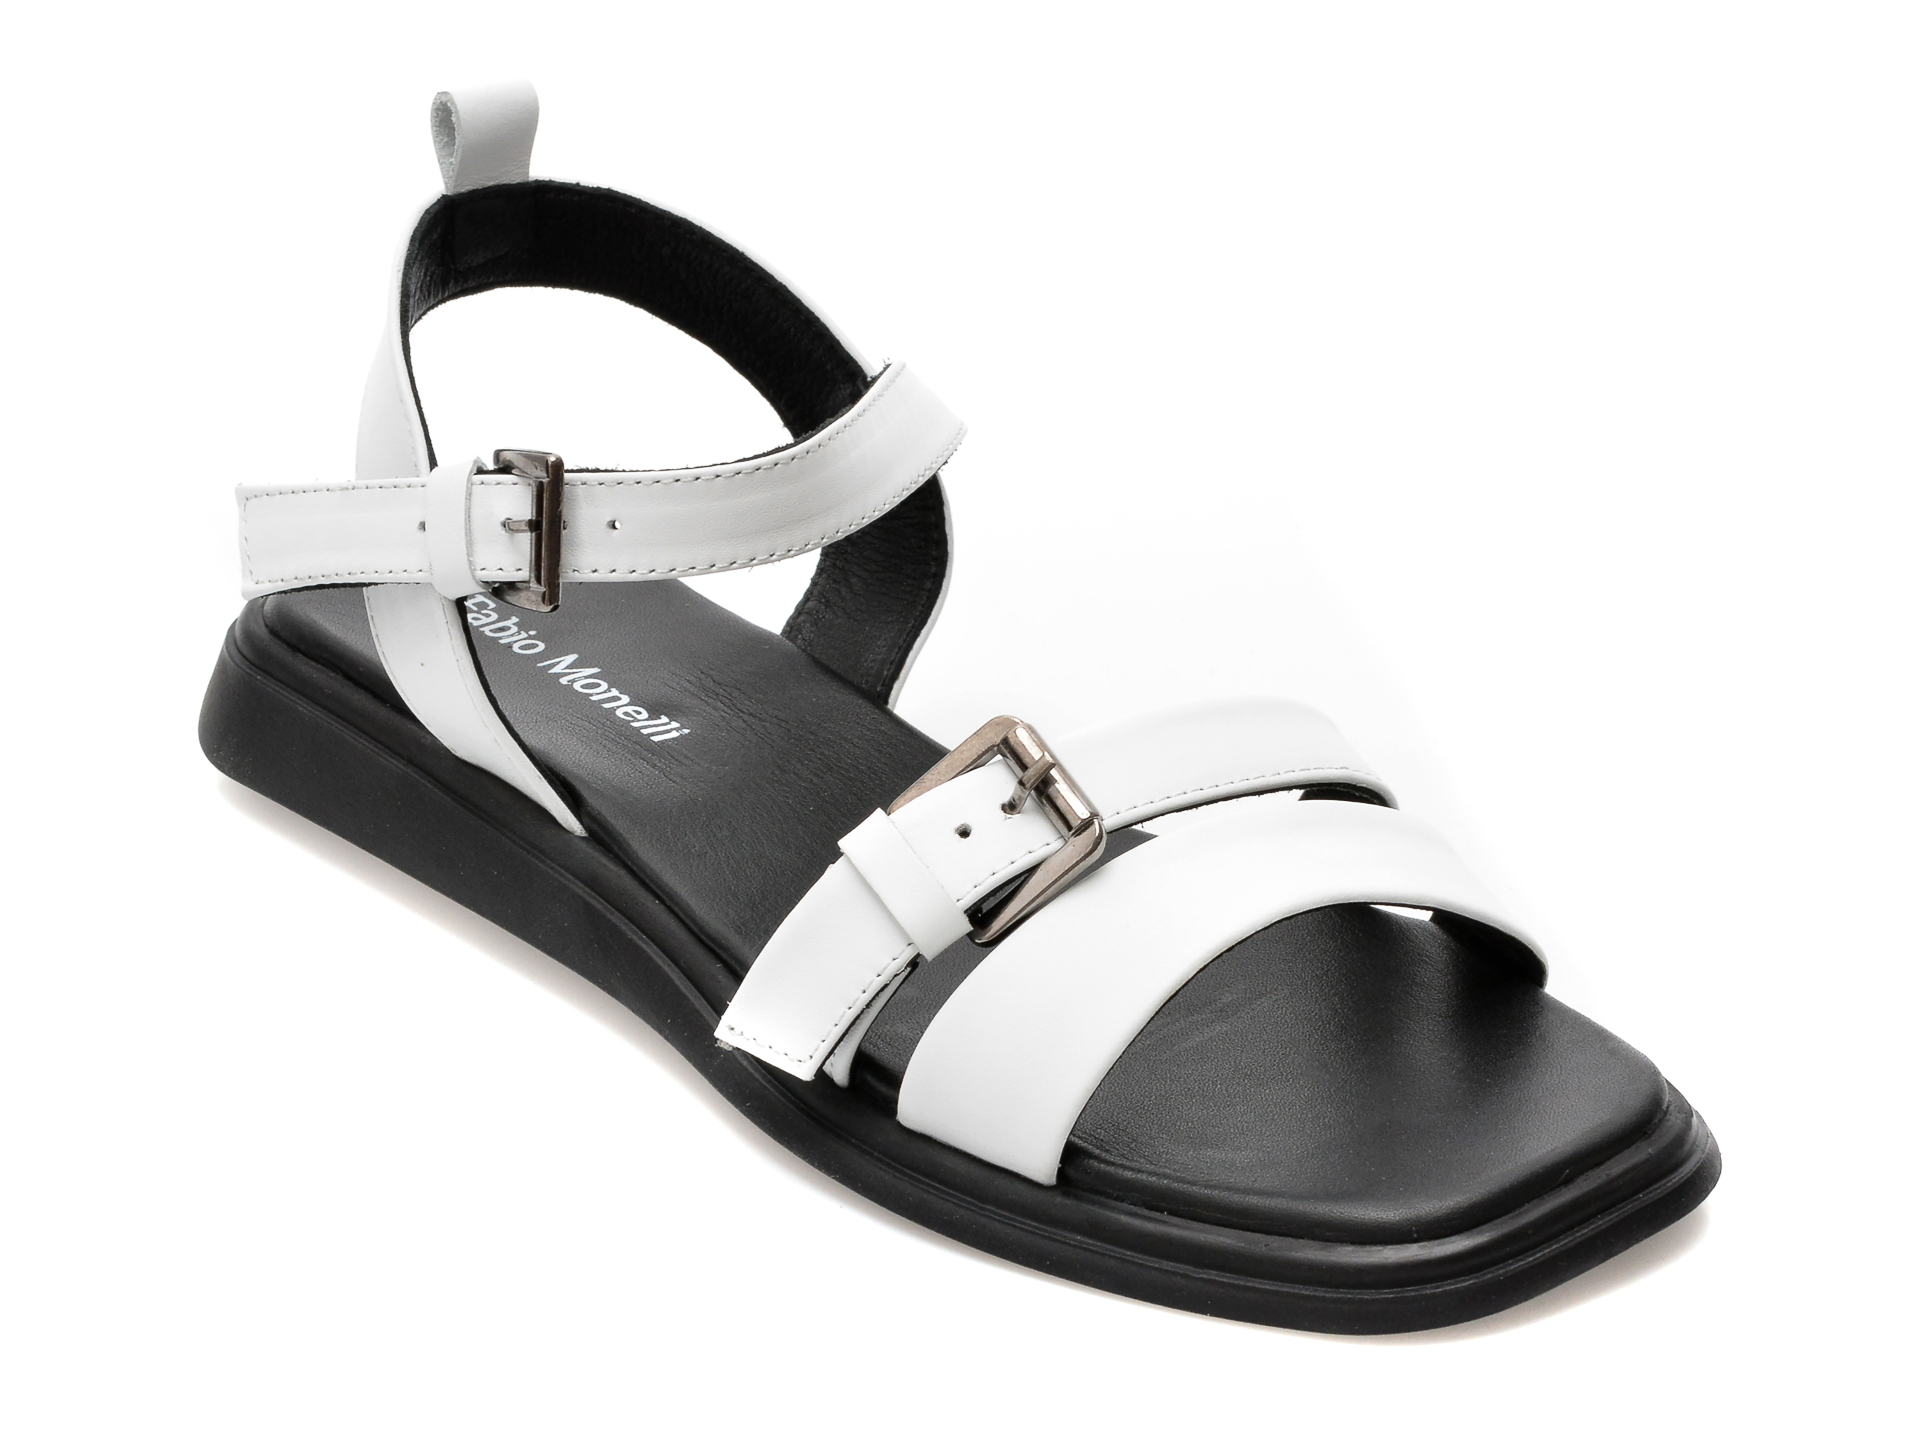 Sandale FABIO MONELLI albe, 694, din piele naturala /femei/sandale imagine noua